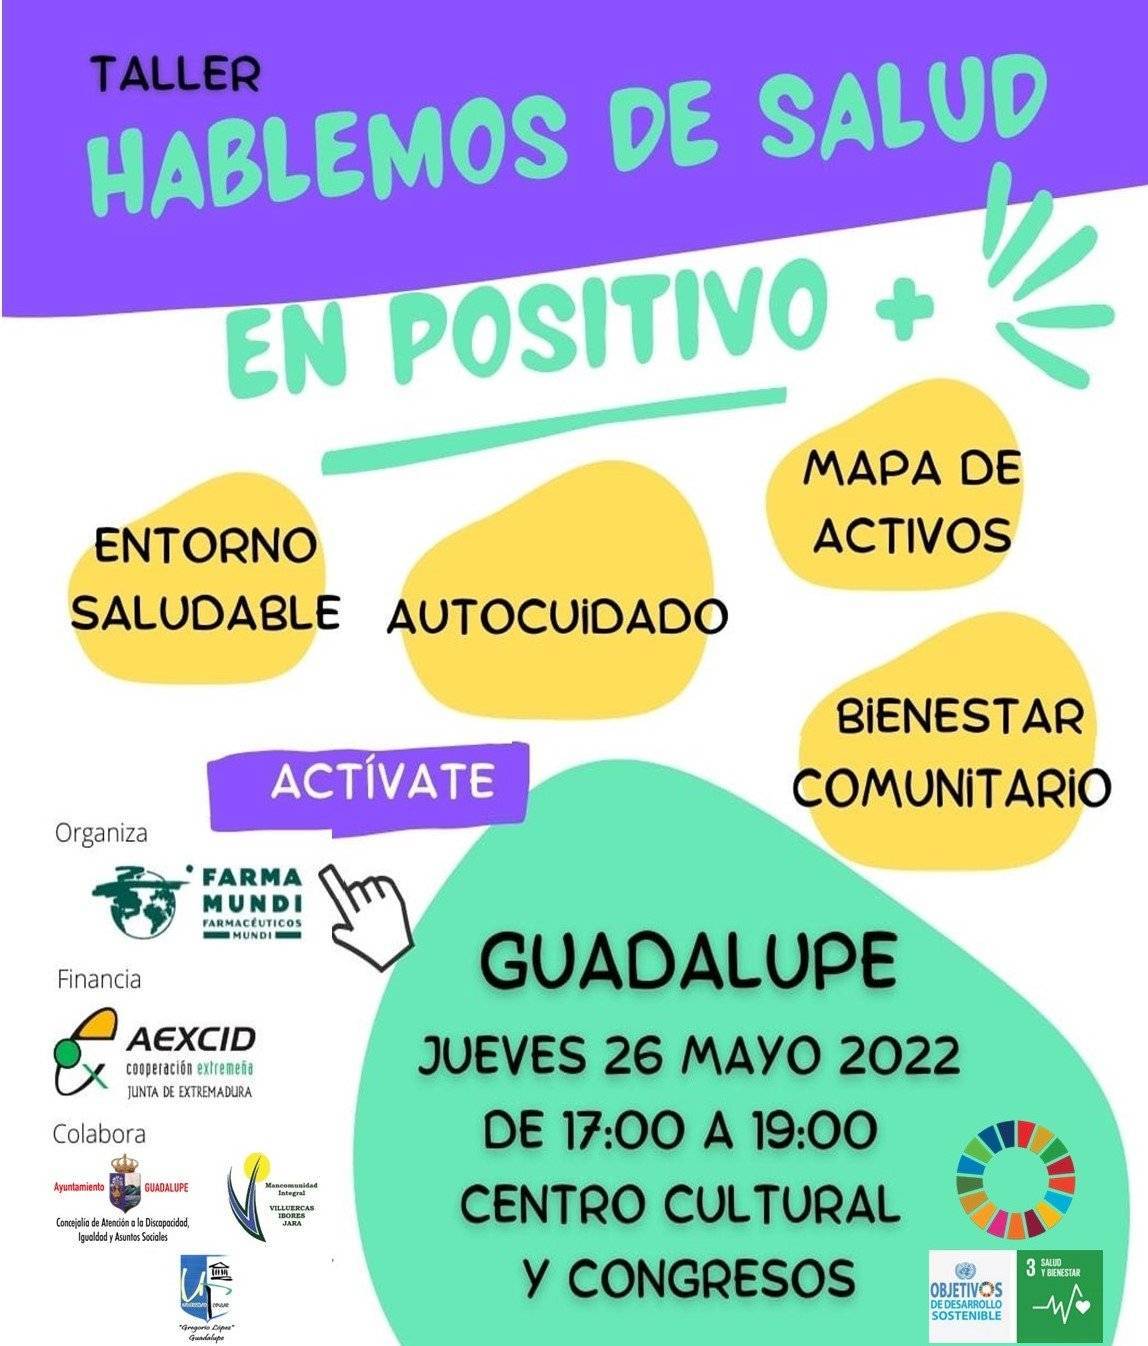 Taller de hablemos de salud en positivo (2022) - Guadalupe (Cáceres)